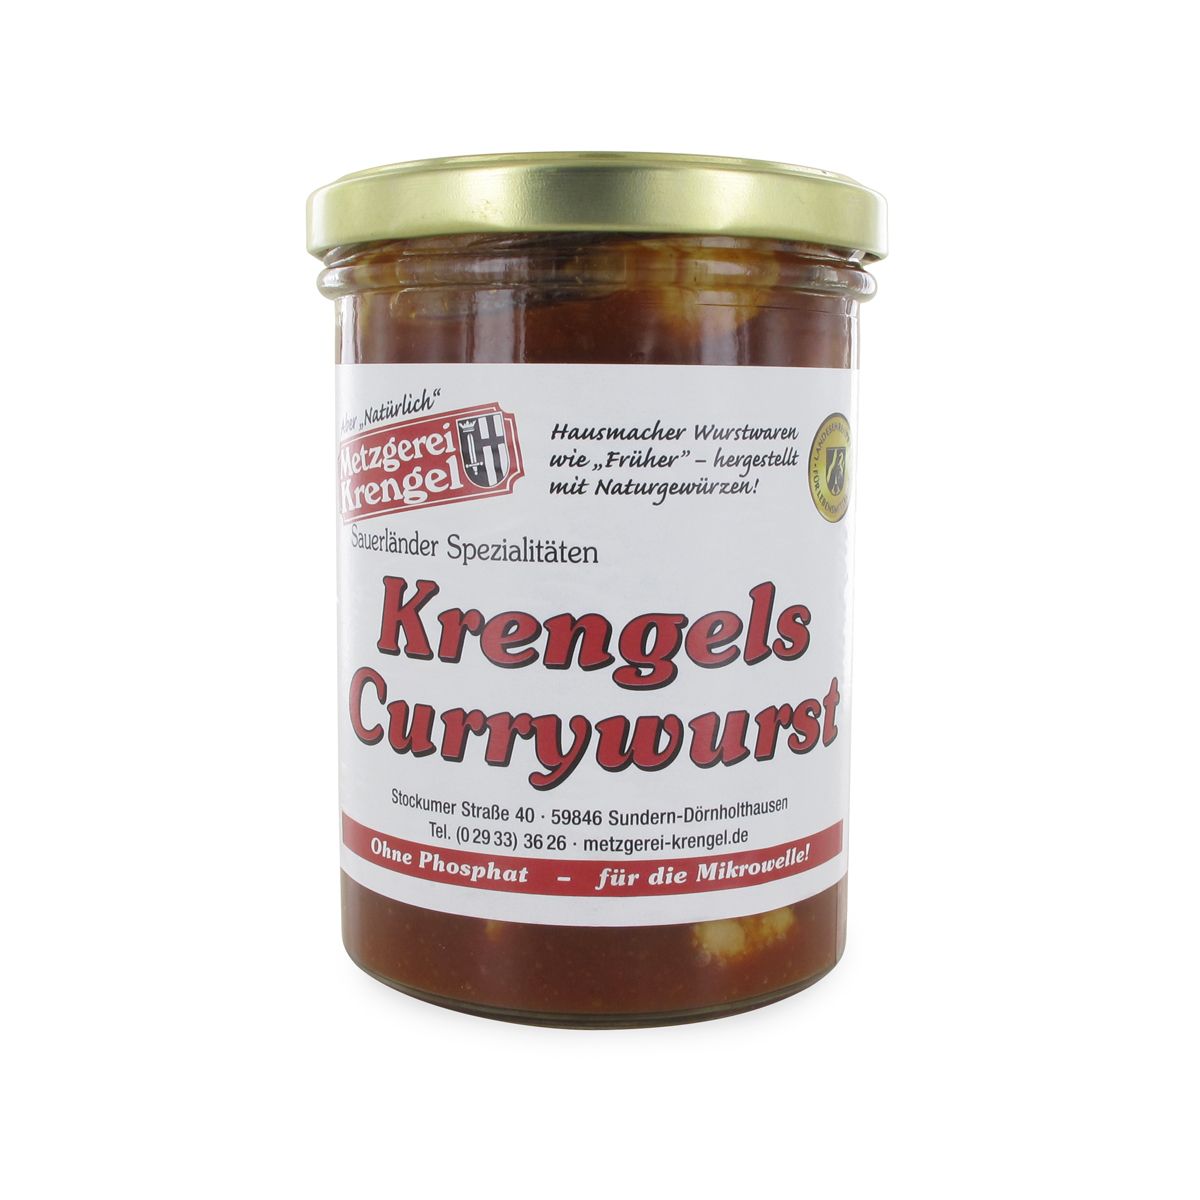 Krengels Currywurst im Glas